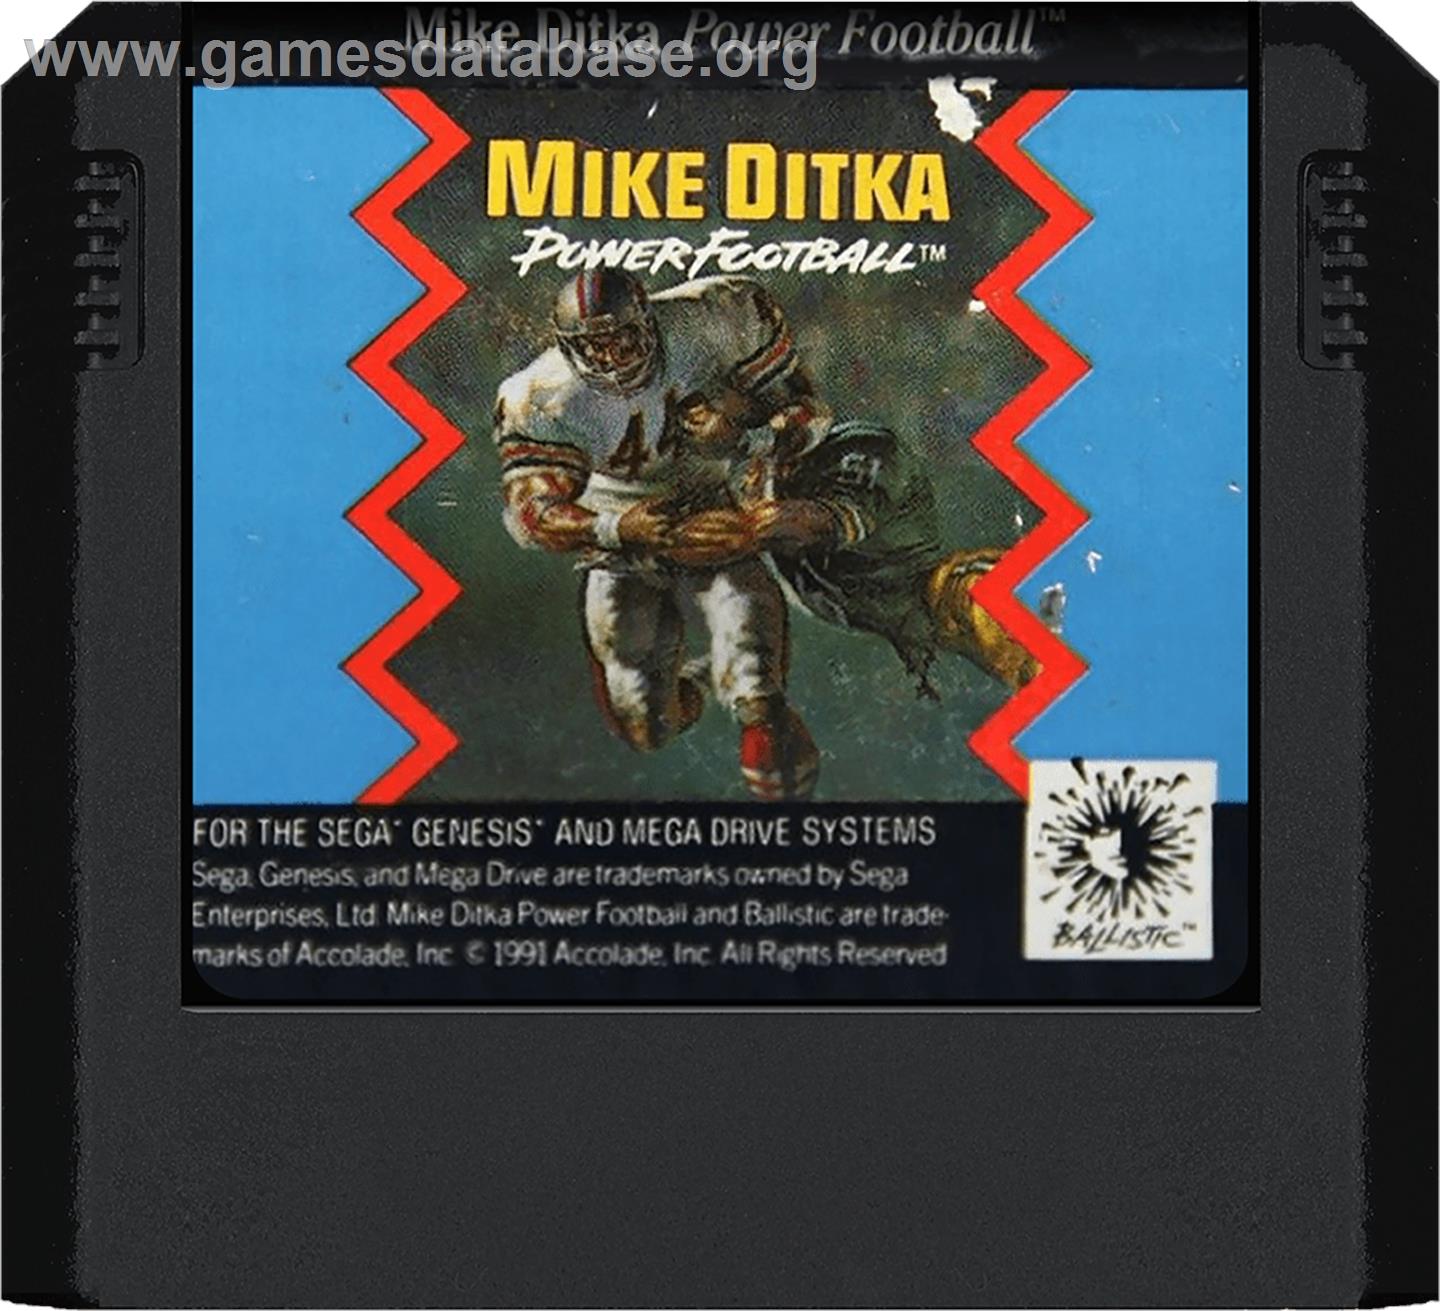 Mike Ditka Power Football - Sega Genesis - Artwork - Cartridge